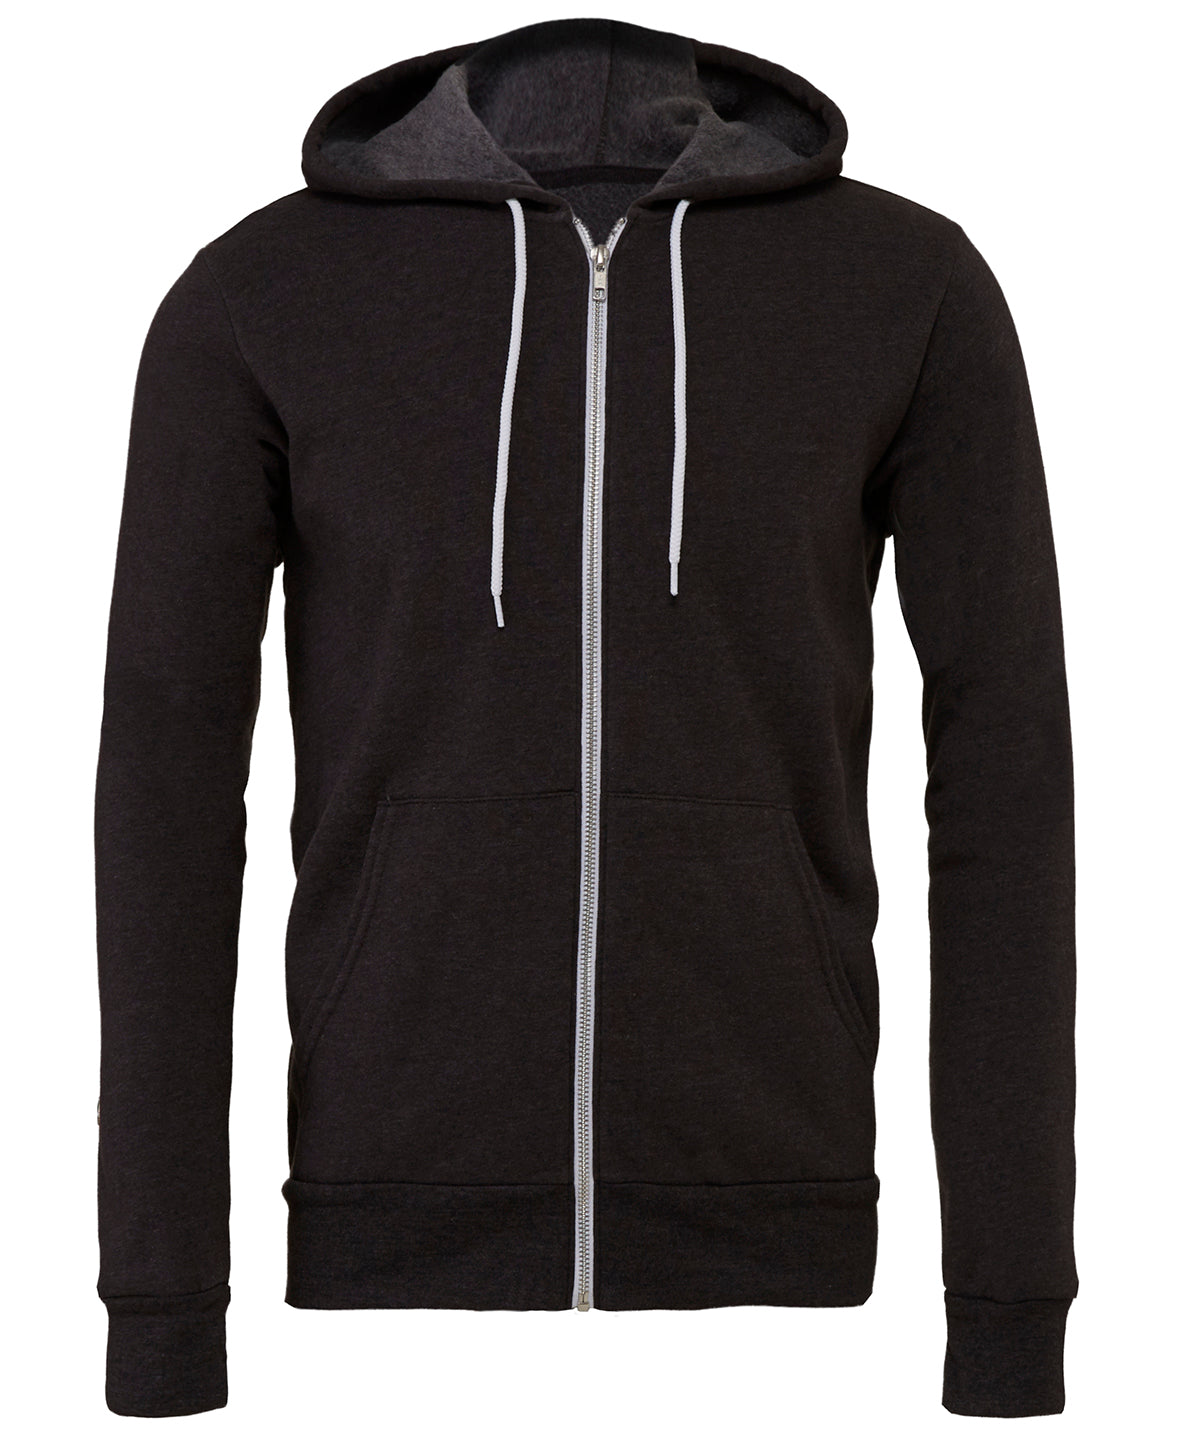 Personalised Hoodies - Navy Bella Canvas Unisex polycotton fleece full-zip hoodie